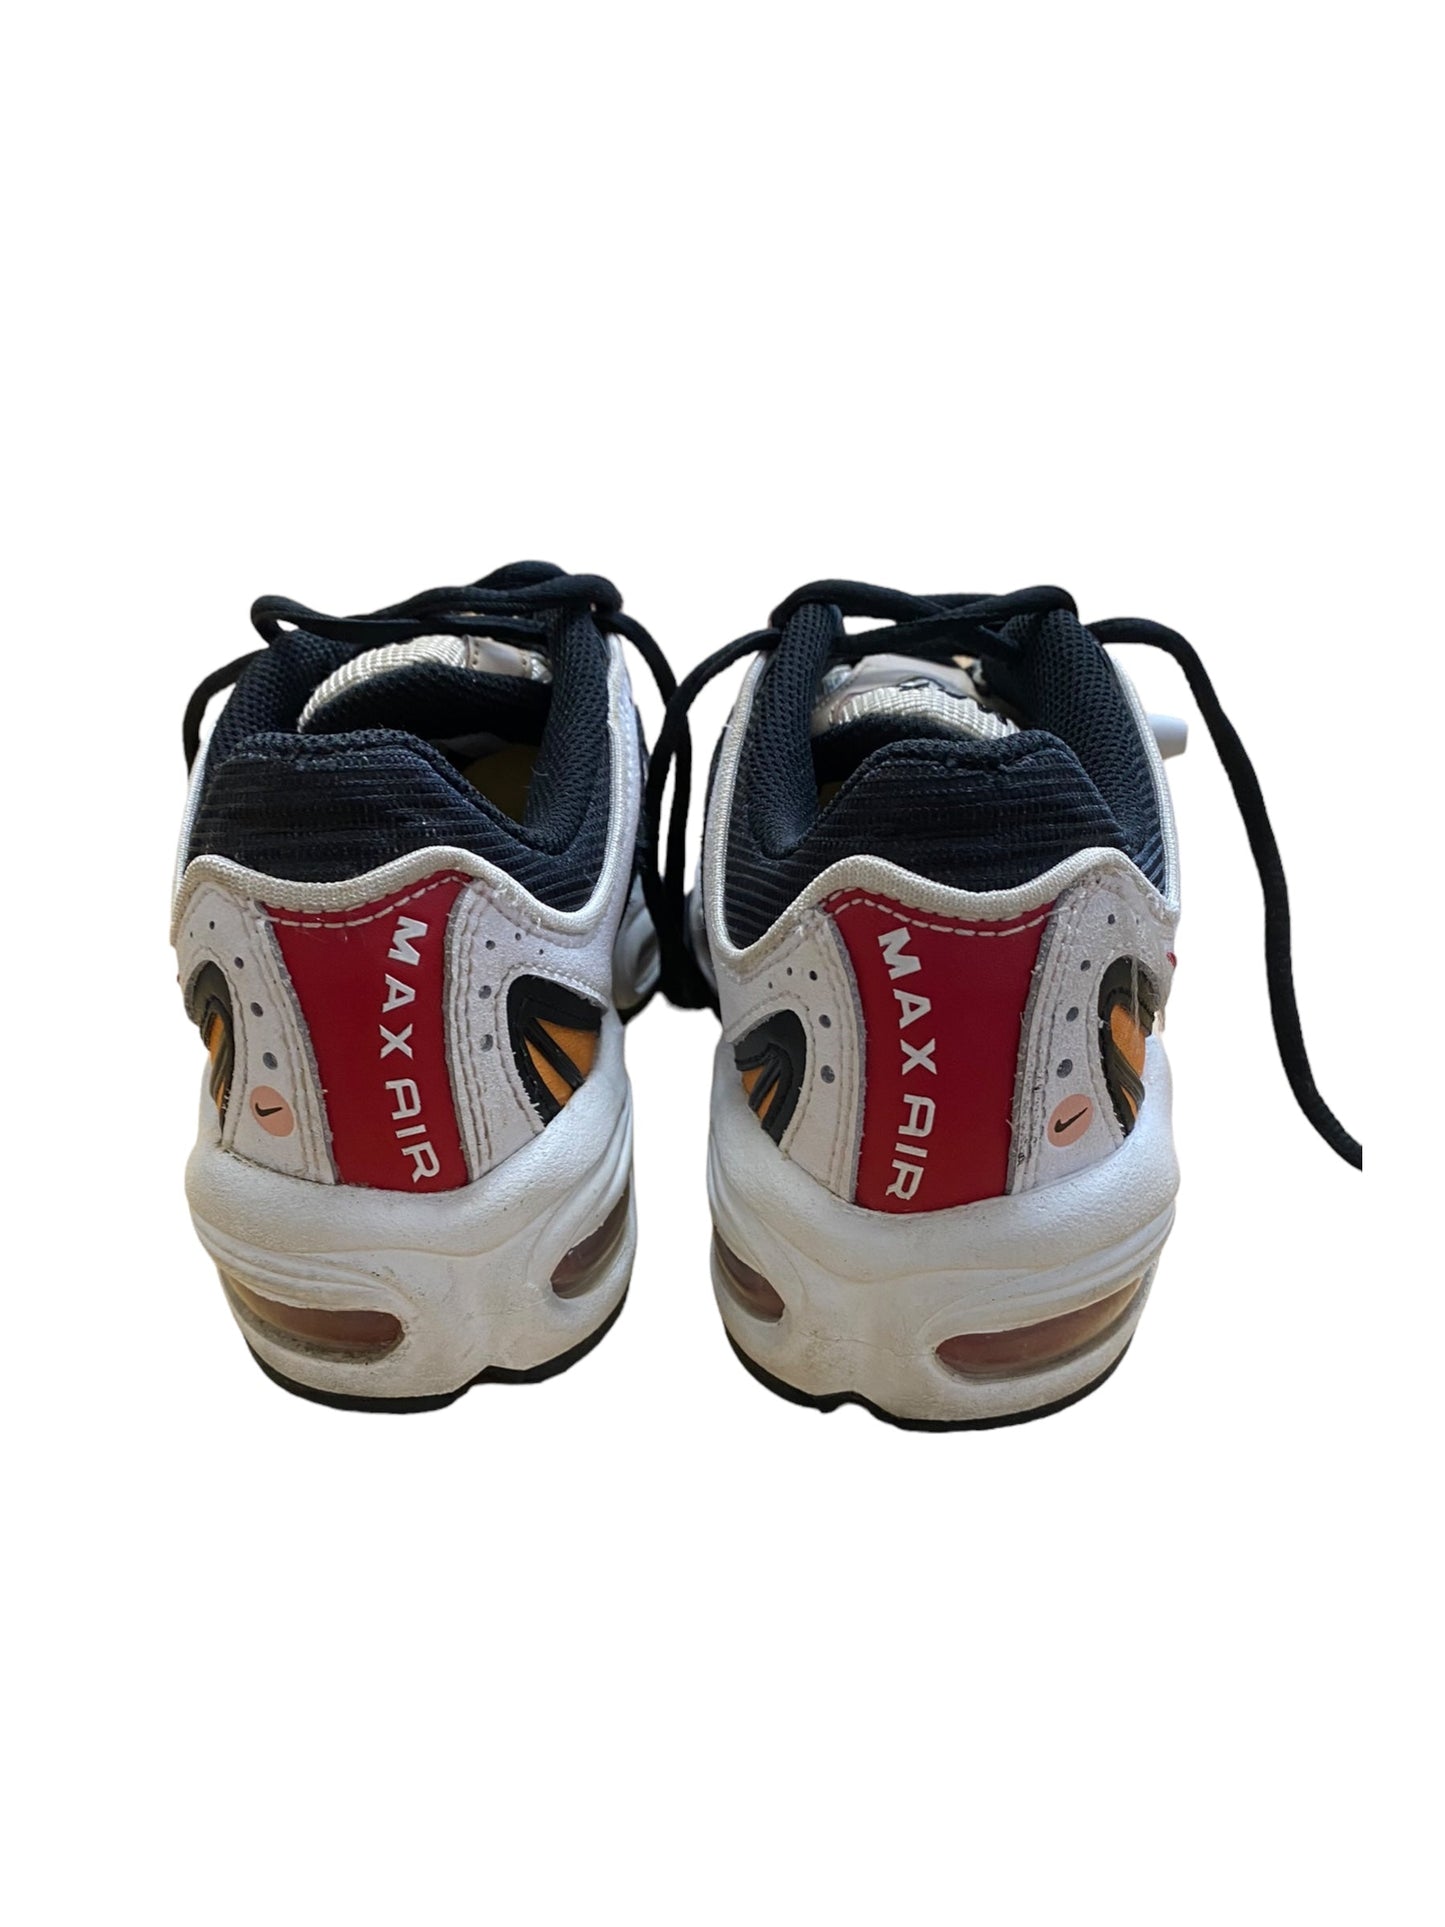 Cream Shoes Athletic Nike, Size 7